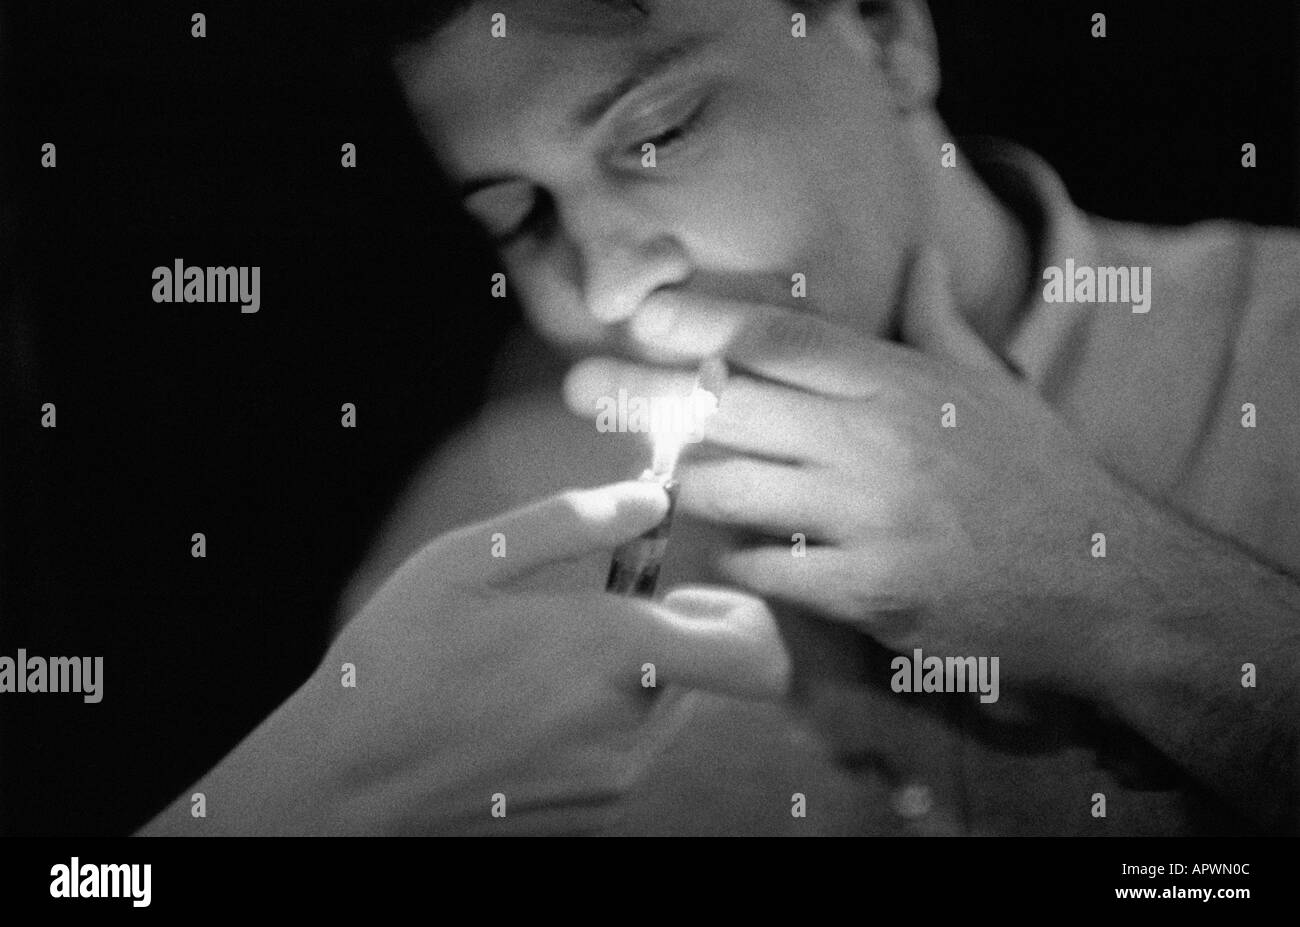 Man smoking a cigarette Banque D'Images